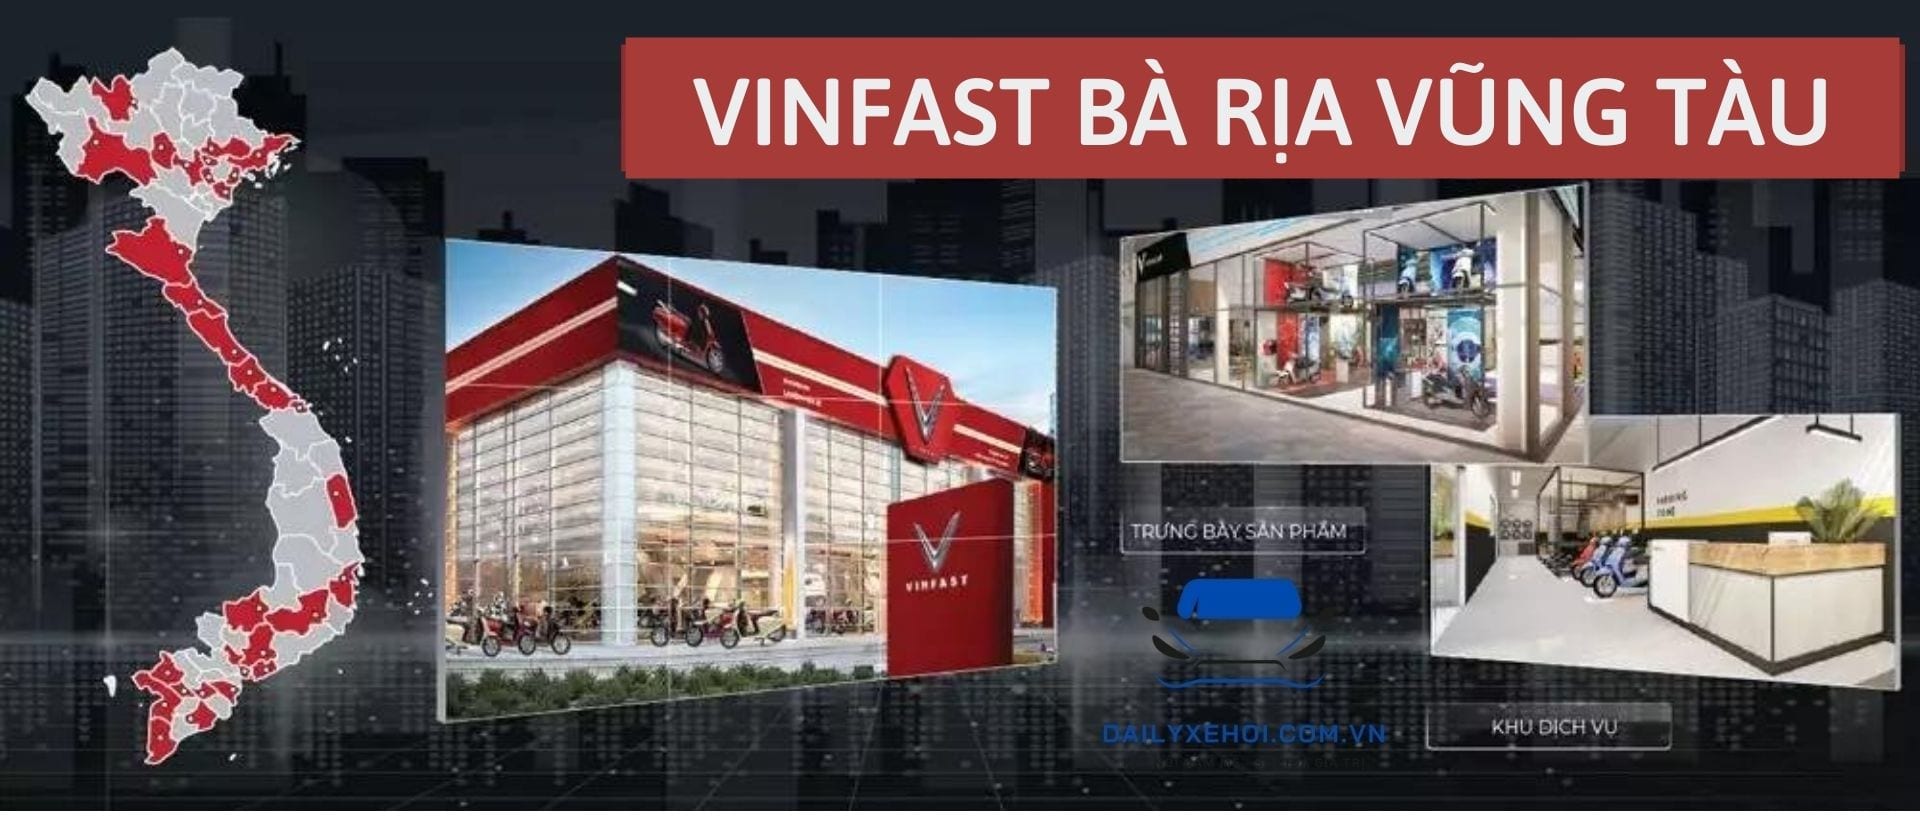 Hội Fadil Vinfast Vũng Tàu  Cả nhà cho em xin hỏi tại BRVTau có gara nào  kích hoạt được các chức năng ẩn trên fadil bản Base không ạ  Facebook